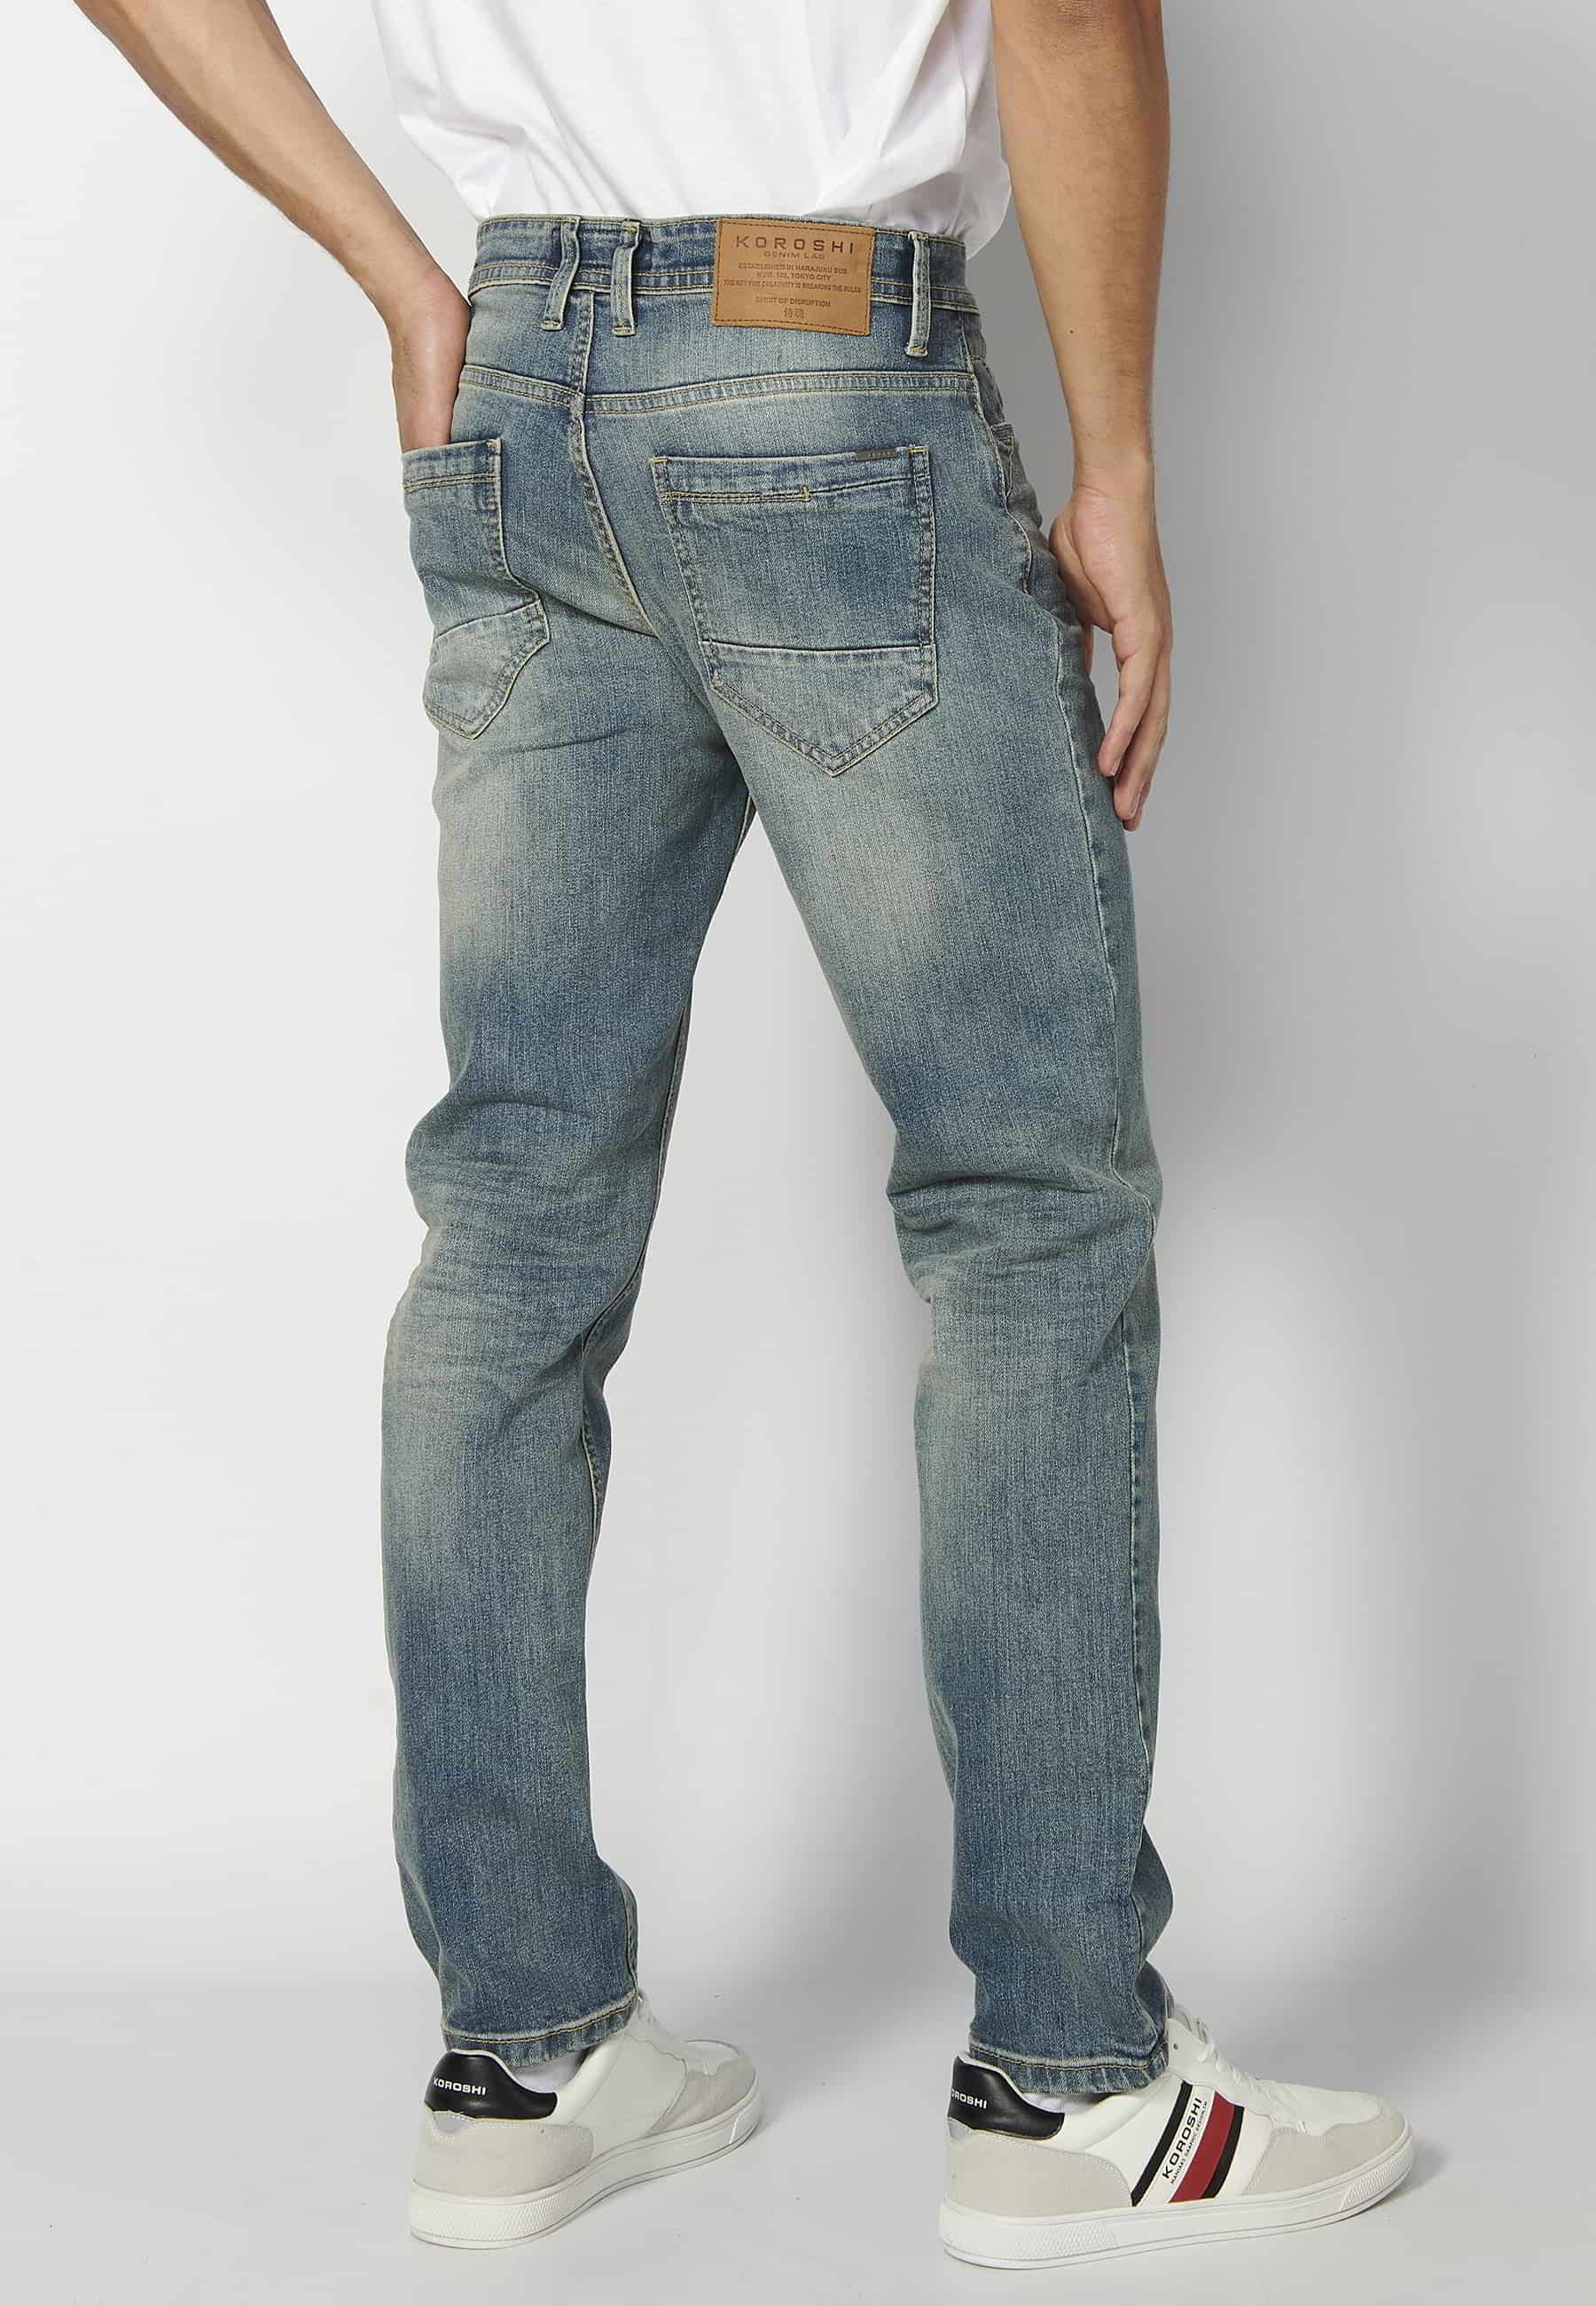 Pantalon long super skinny, à cinq poches, couleur gris usé pour Homme 2